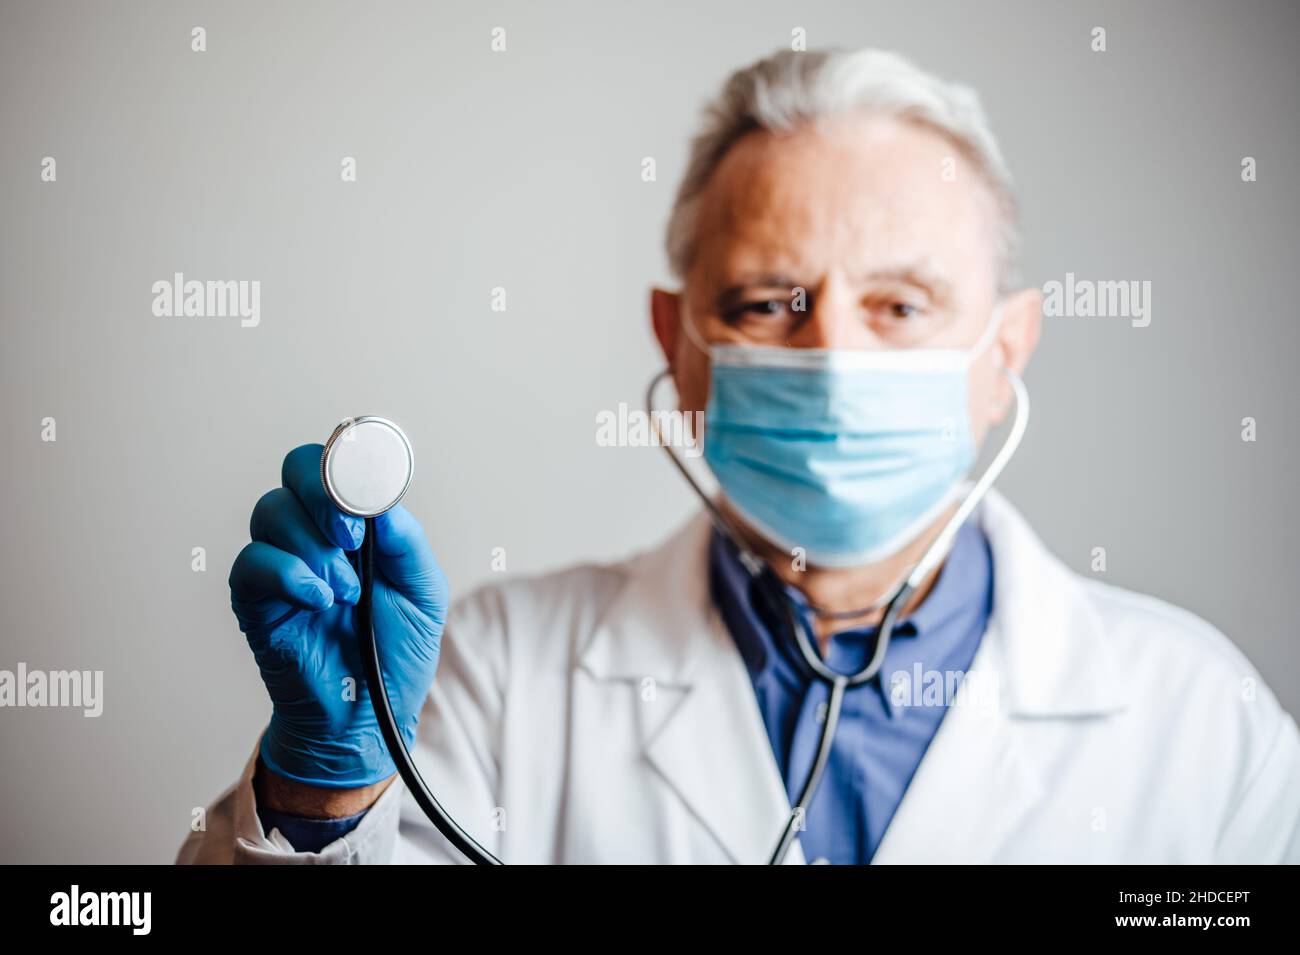 El médico está a punto de examinar el corazón y los pulmones de un paciente Foto de stock